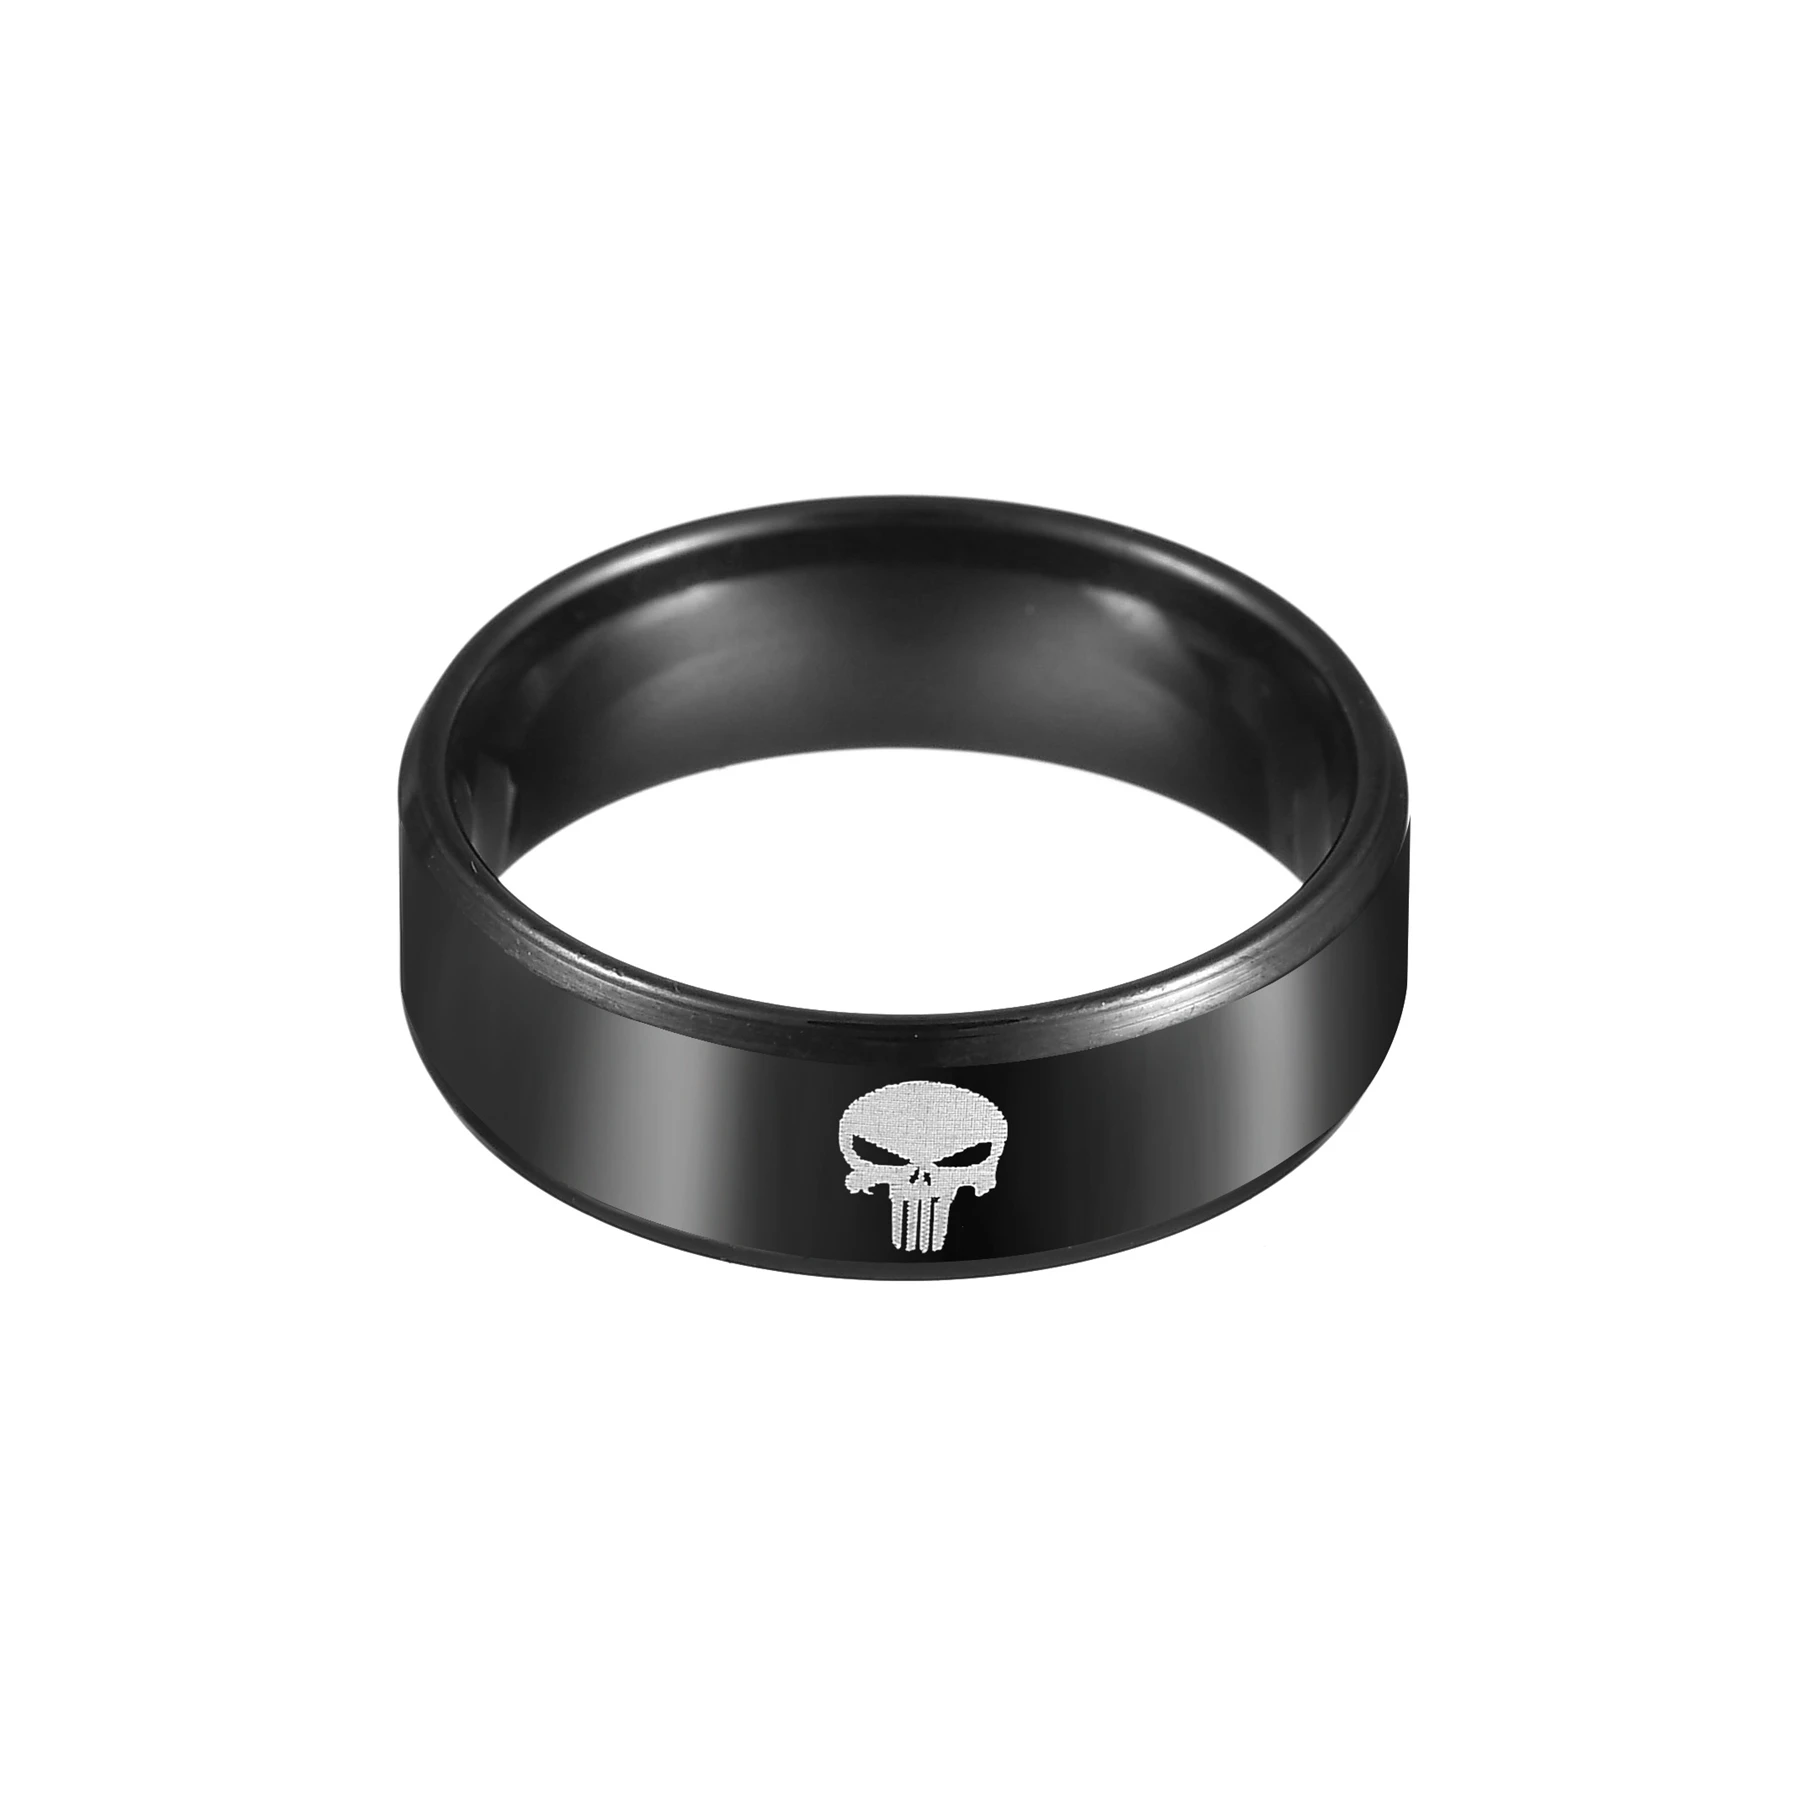 Otakoo comics супергерой череп логотип череп скелет кольцо из нержавеющей стали кольцо для мужчин Бренд женское кольцо